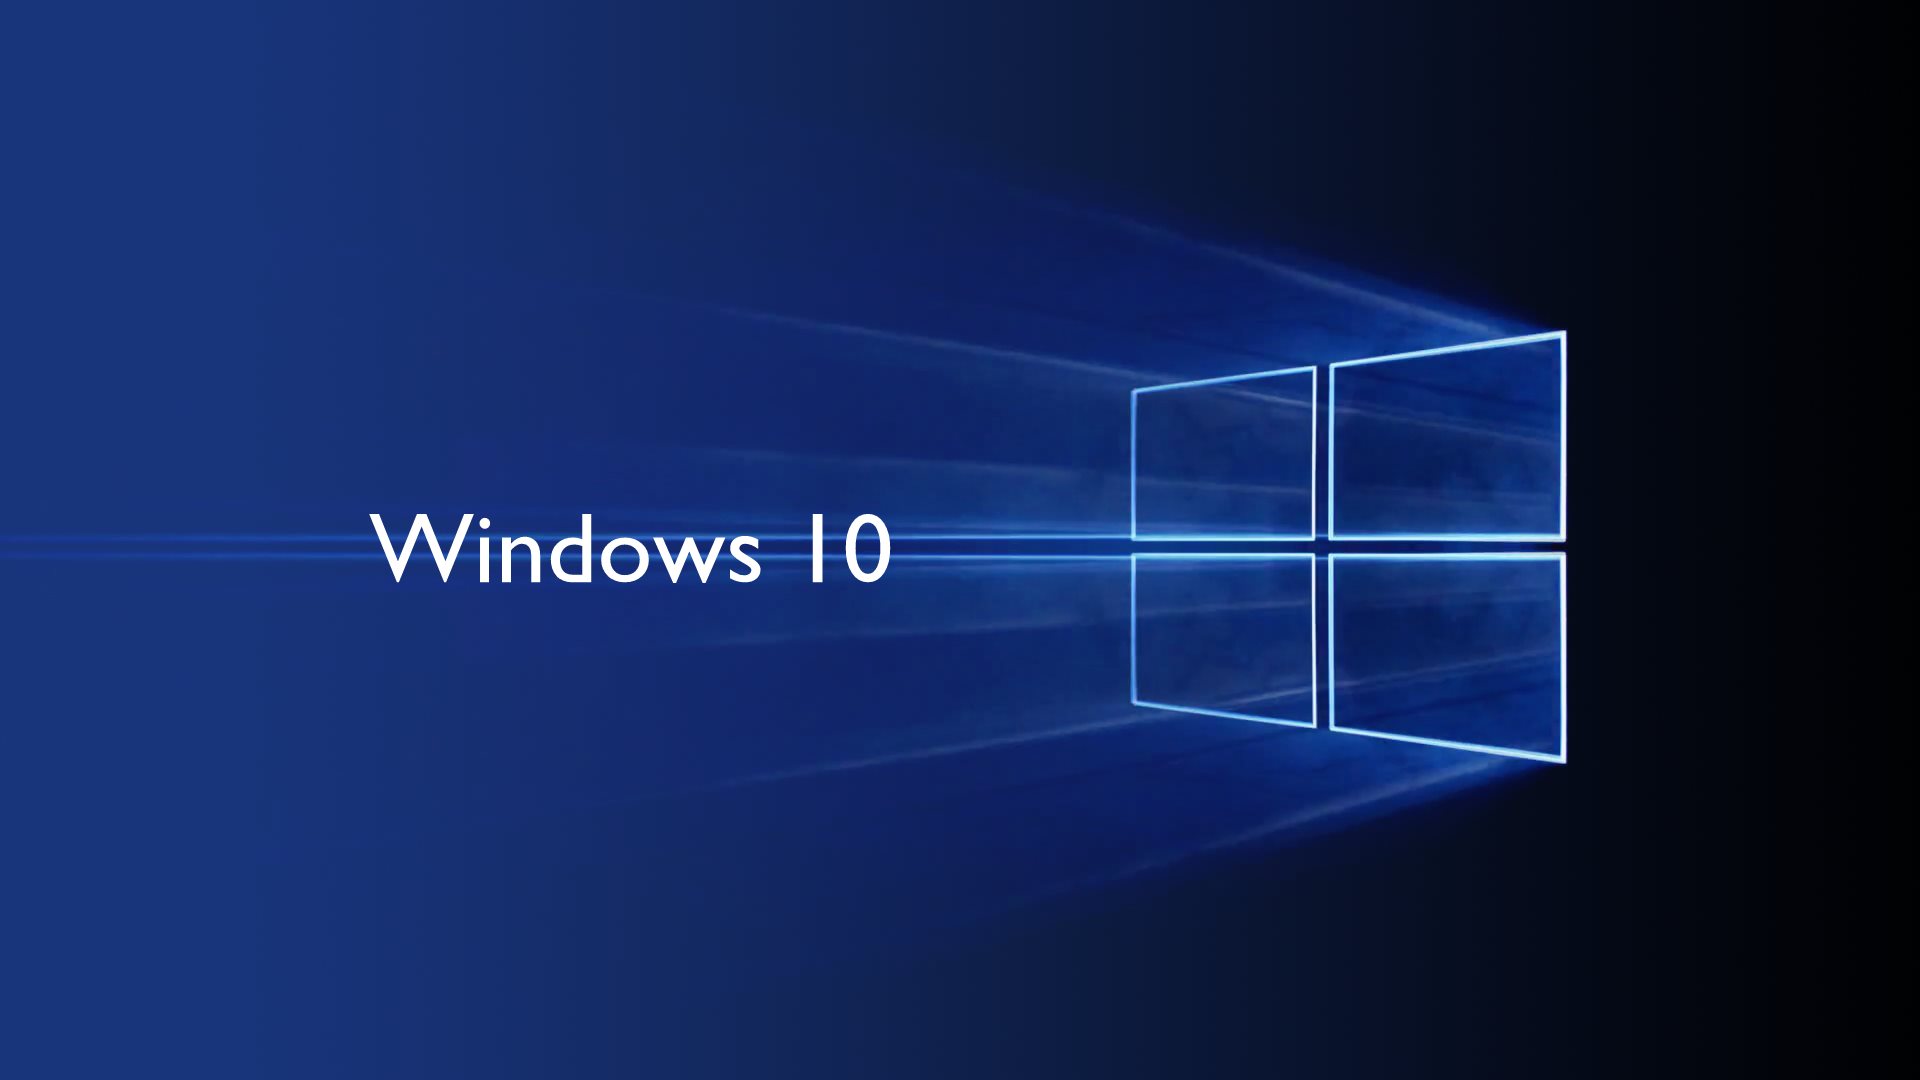 WINDOWS 10 wallpaper 1 ارتقاء رایگان ویندوز 10 به زودی پایان خواهد یافت!